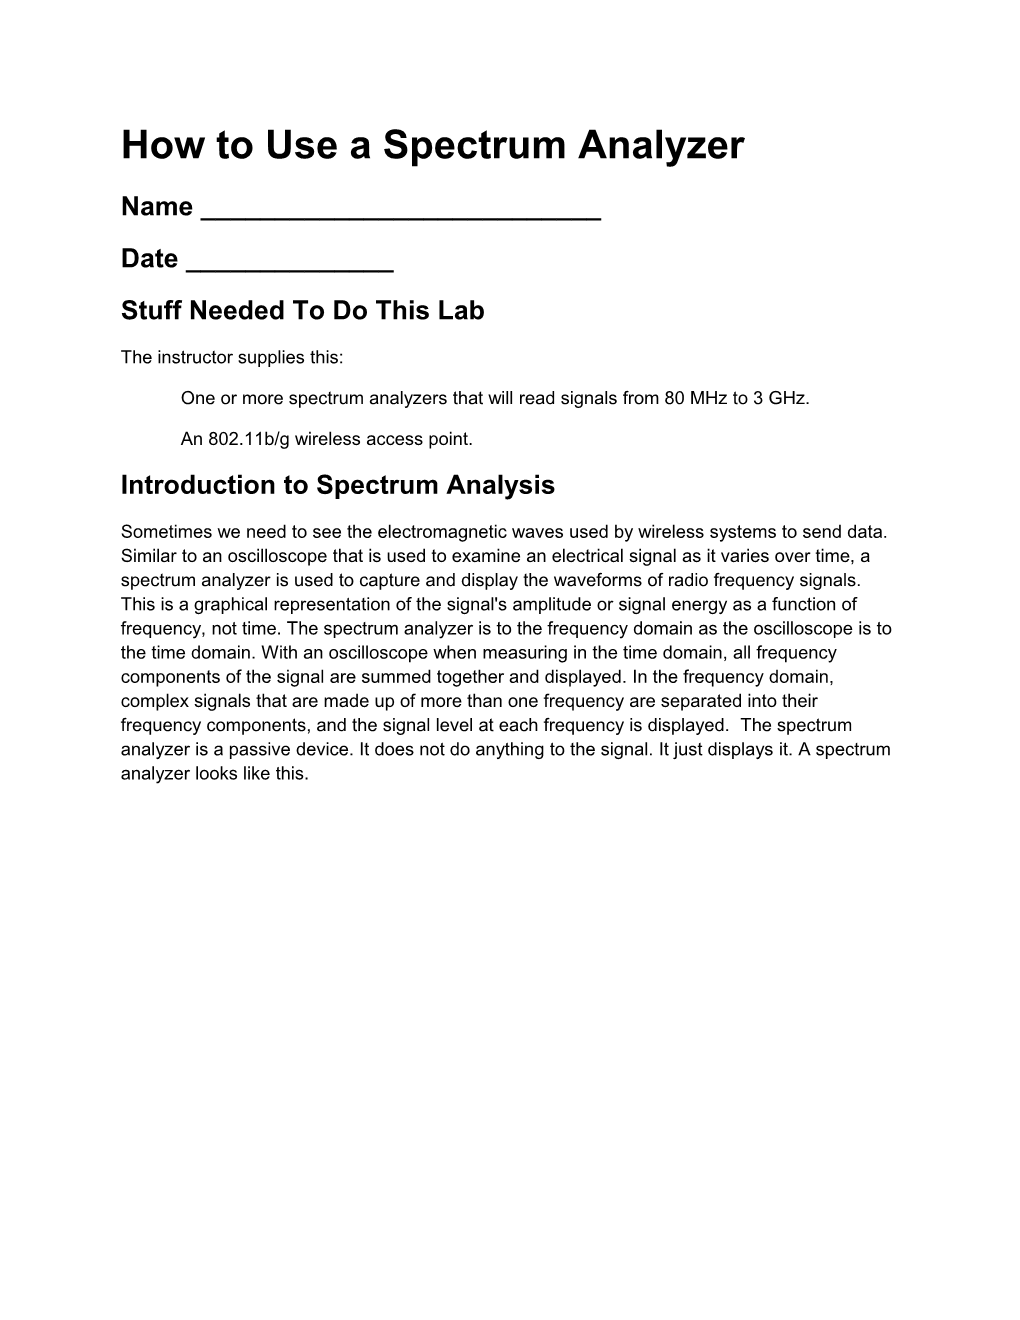 How to Use a Spectrum Analyzer